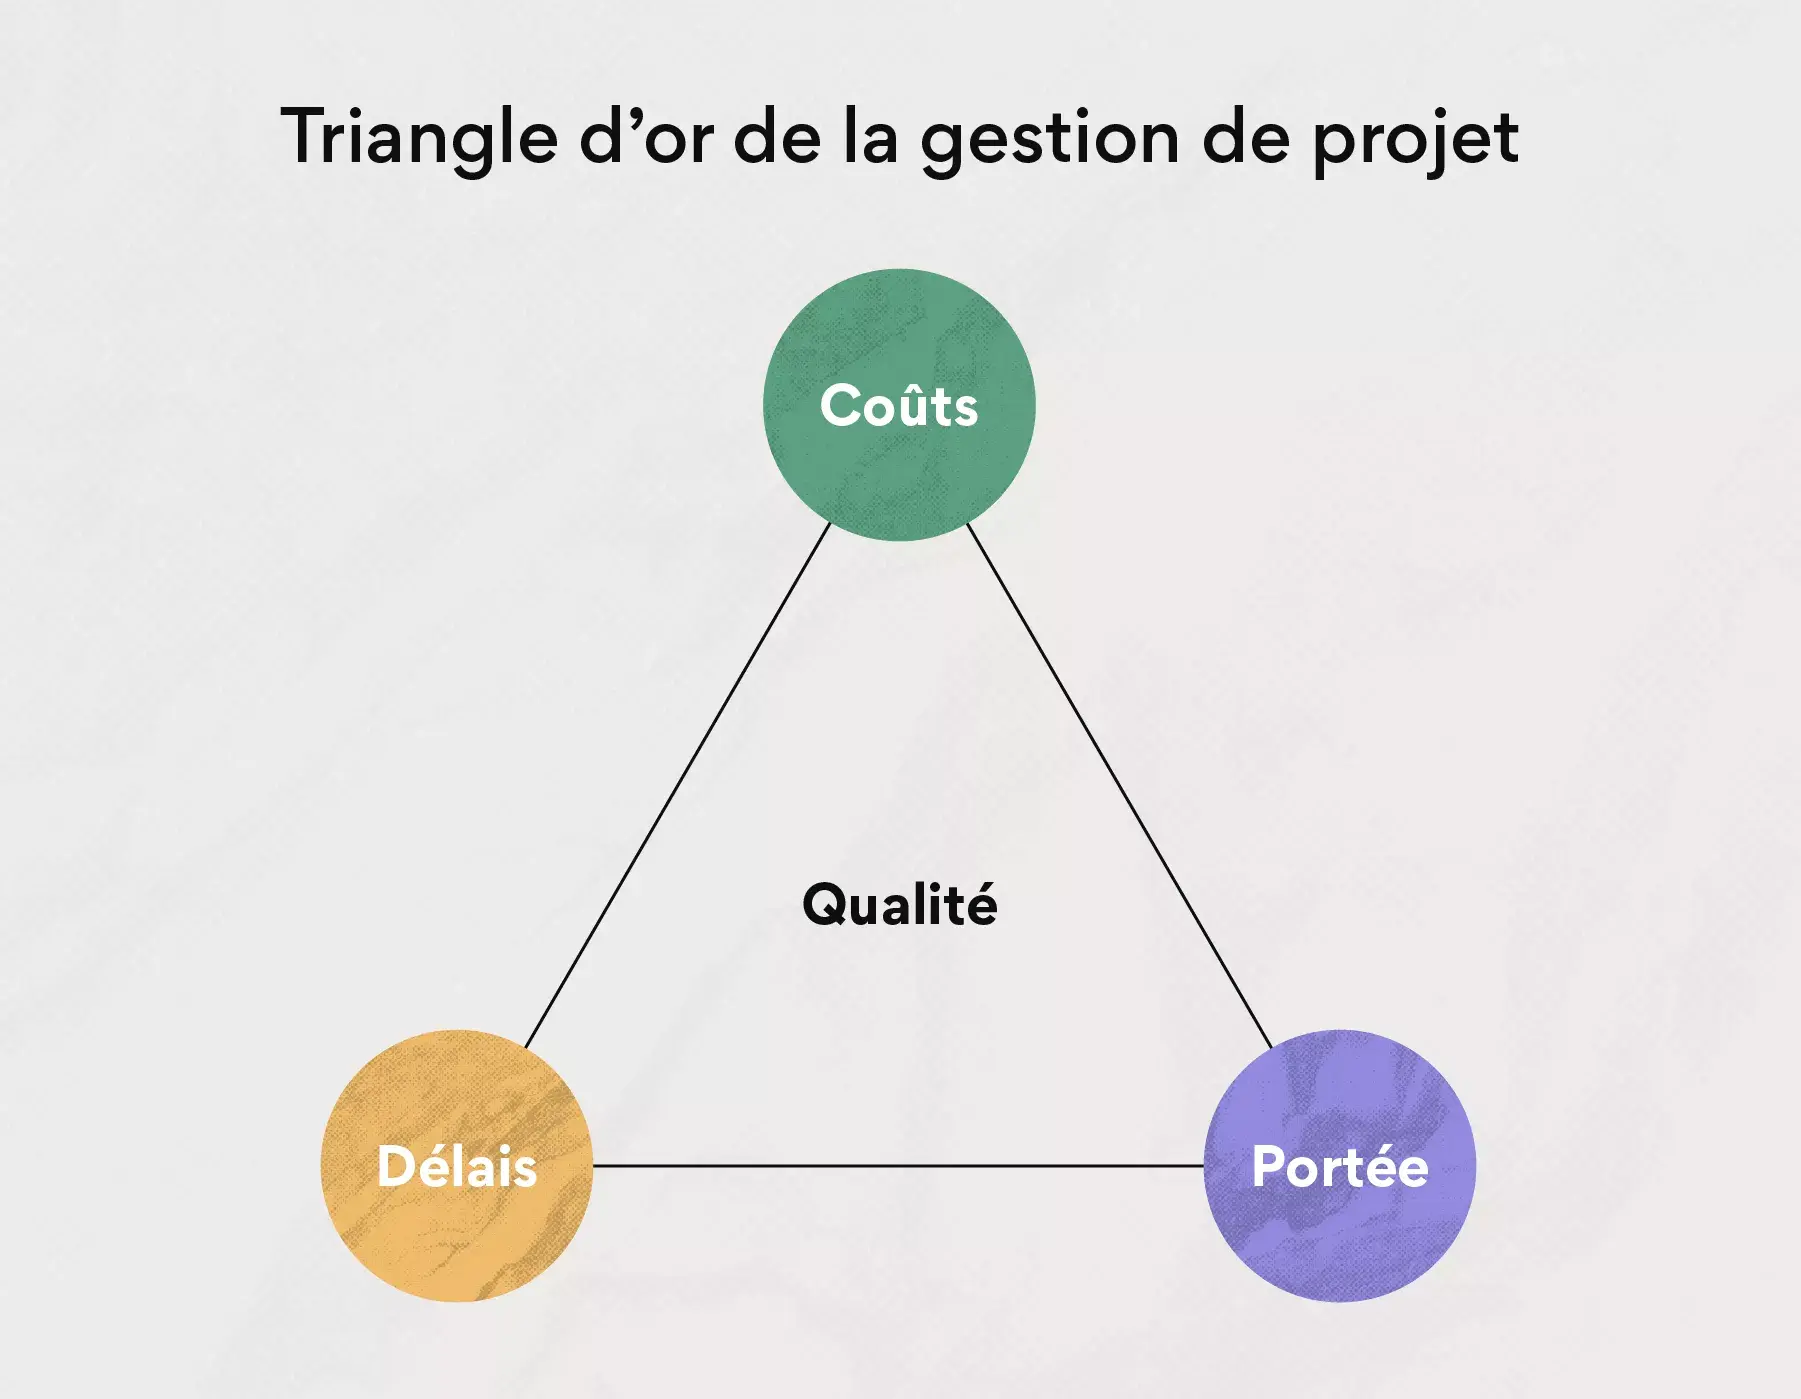 Le triangle d’or de la gestion de projet